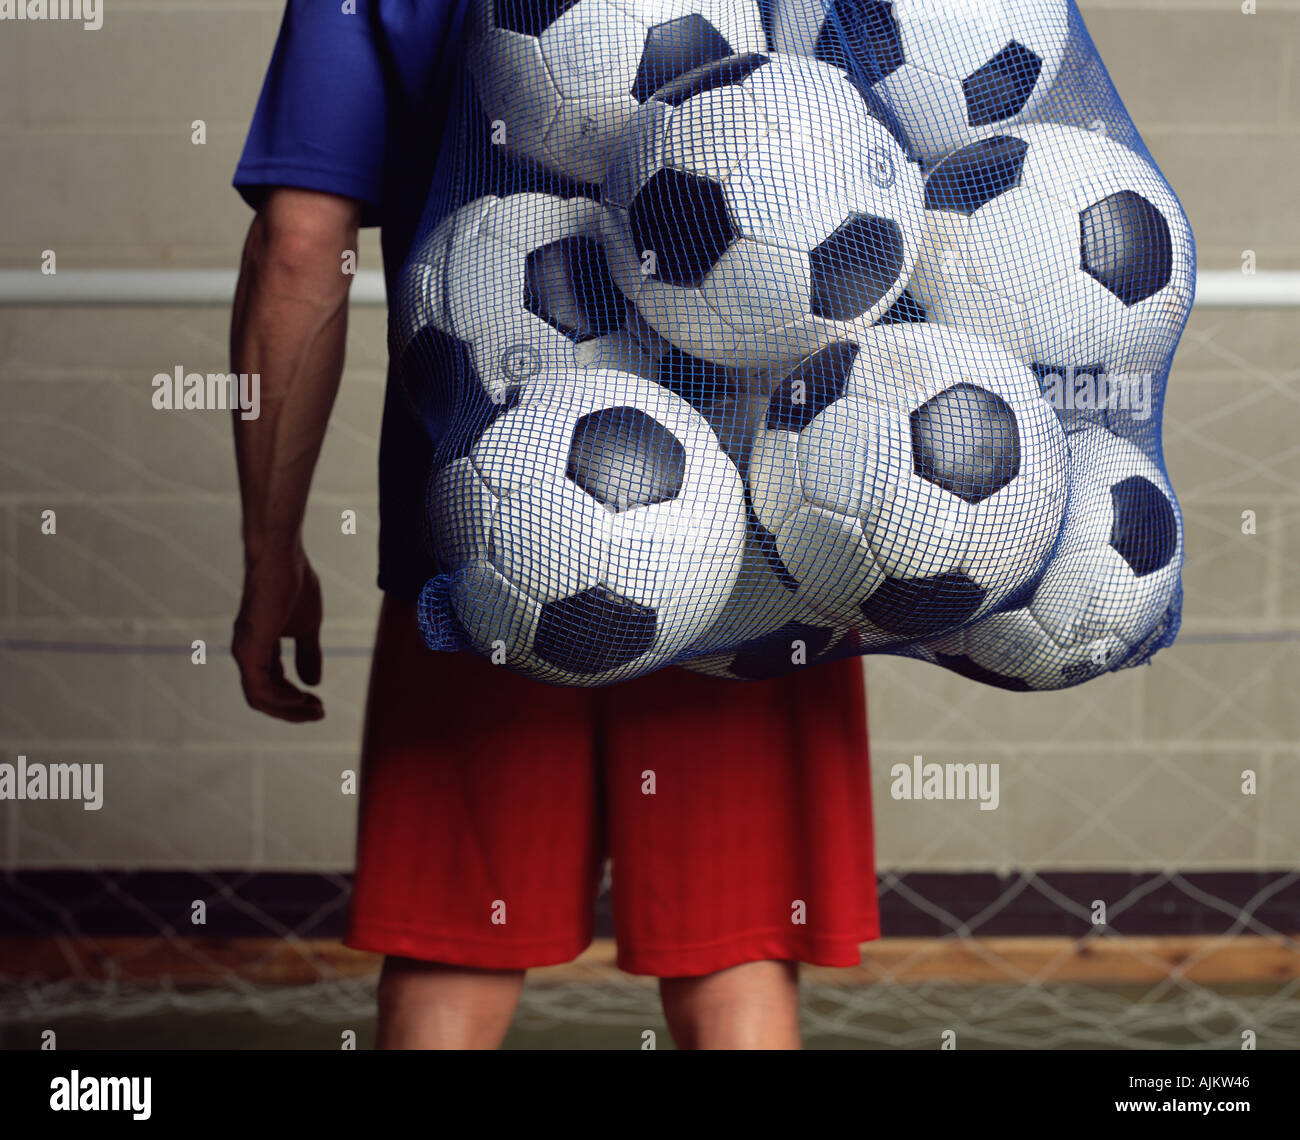 La tenue de football un sac de ballons Banque D'Images